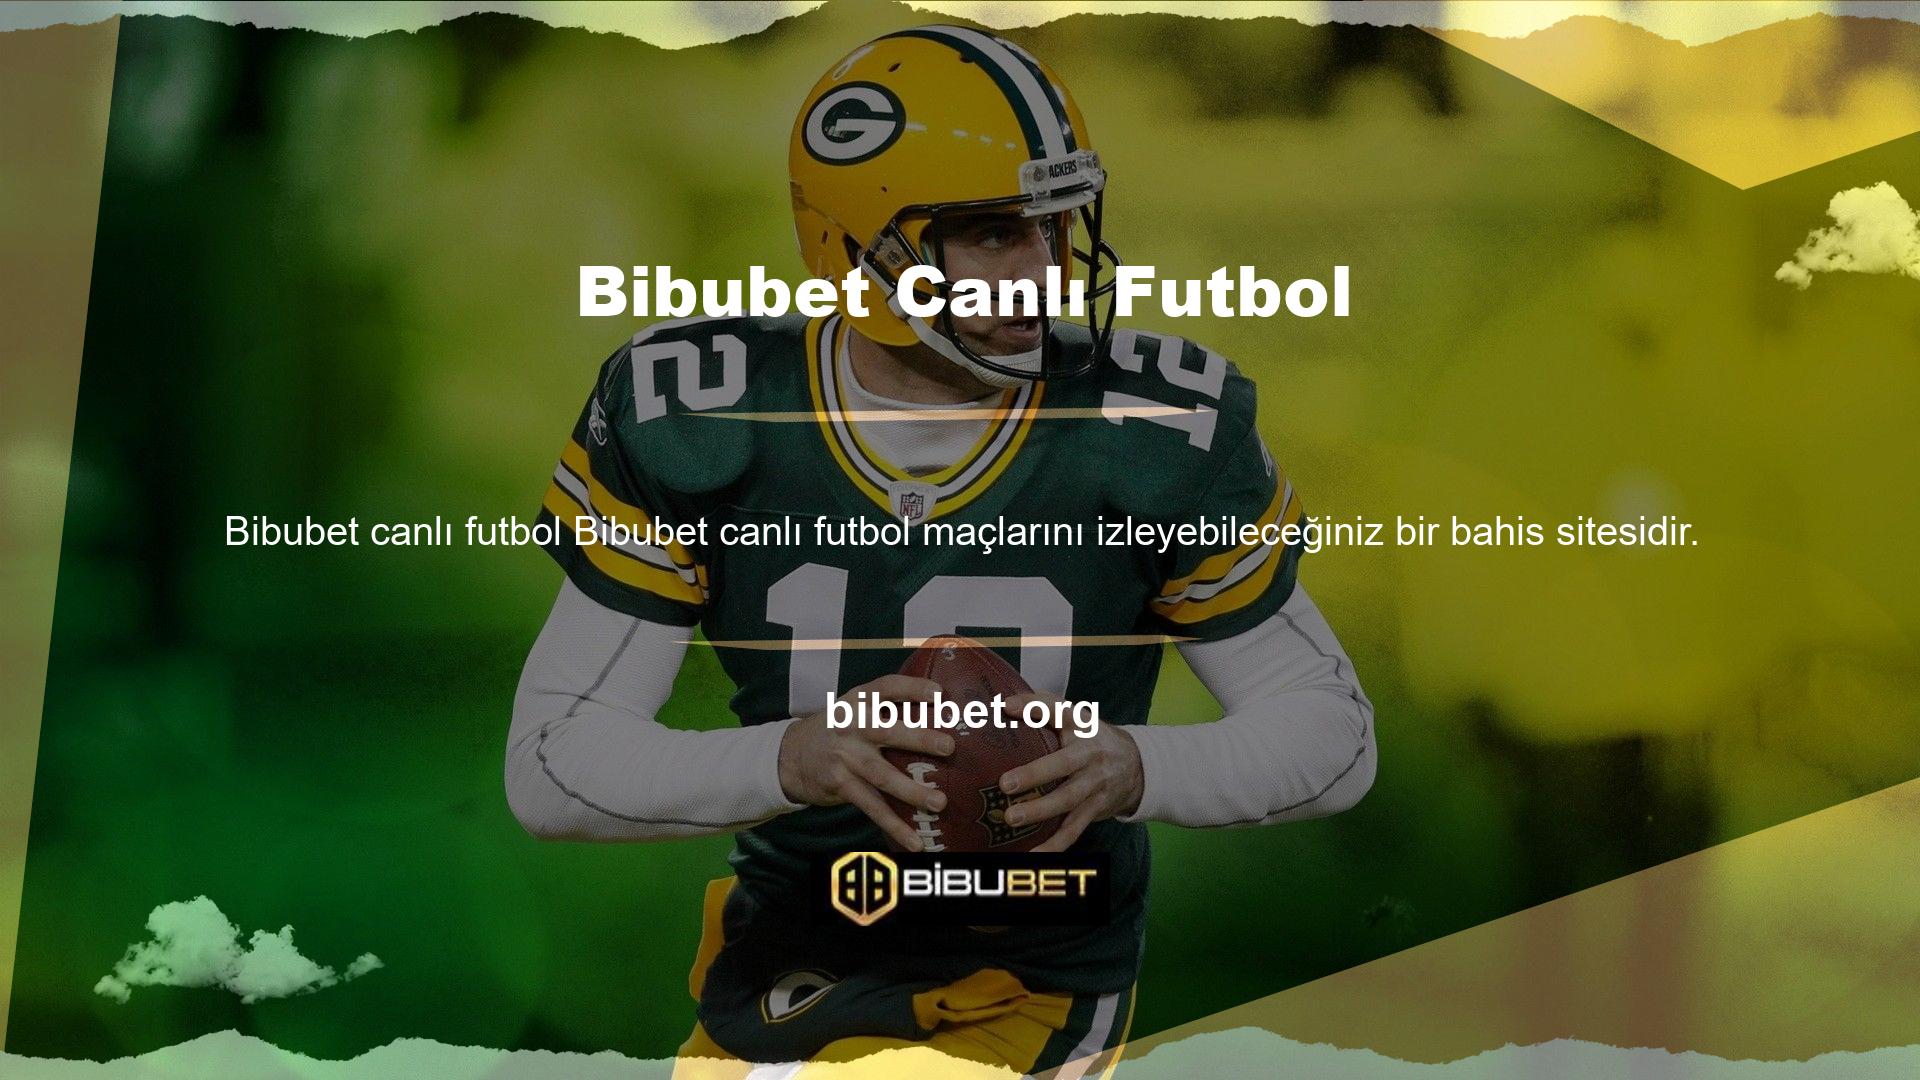 Bibubet kullanıcılarına benzersiz bir futbol deneyimi yaşatan dünyanın birçok ülkesinden ligleri izleme yeteneğine sahiptir